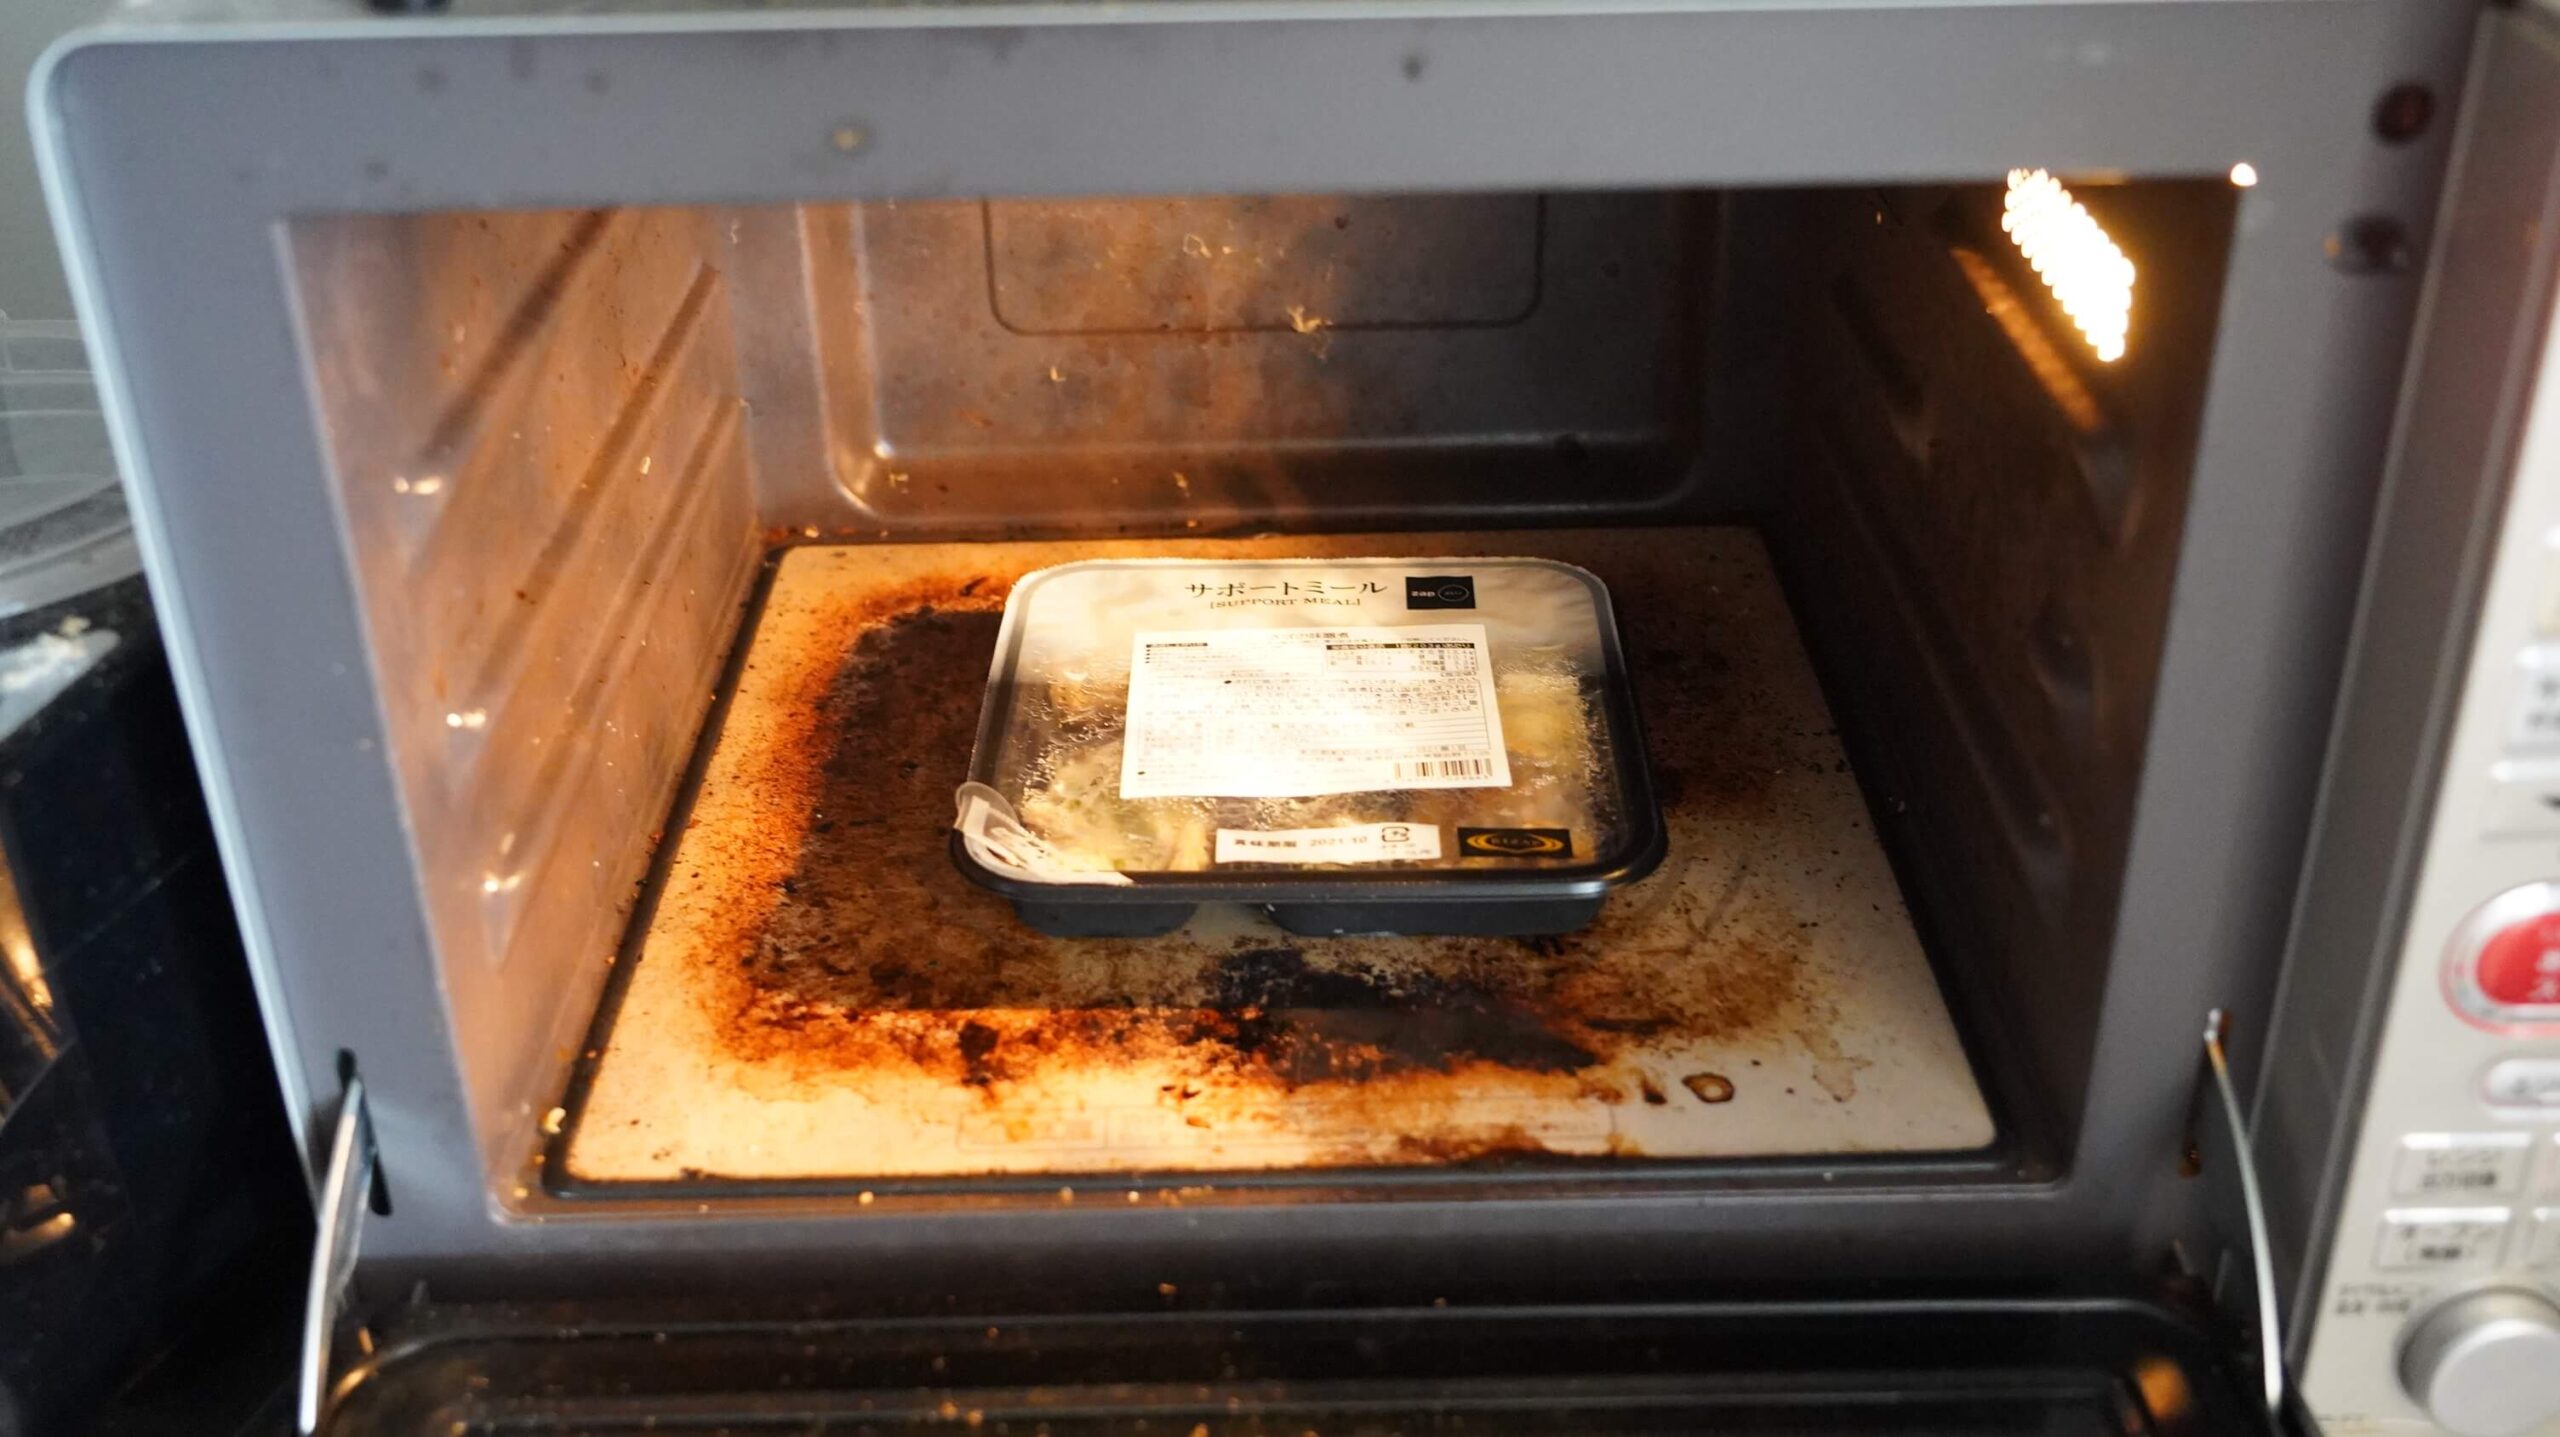 ライザップのサポートミール「さばの味噌煮」を電子レンジで加熱している写真